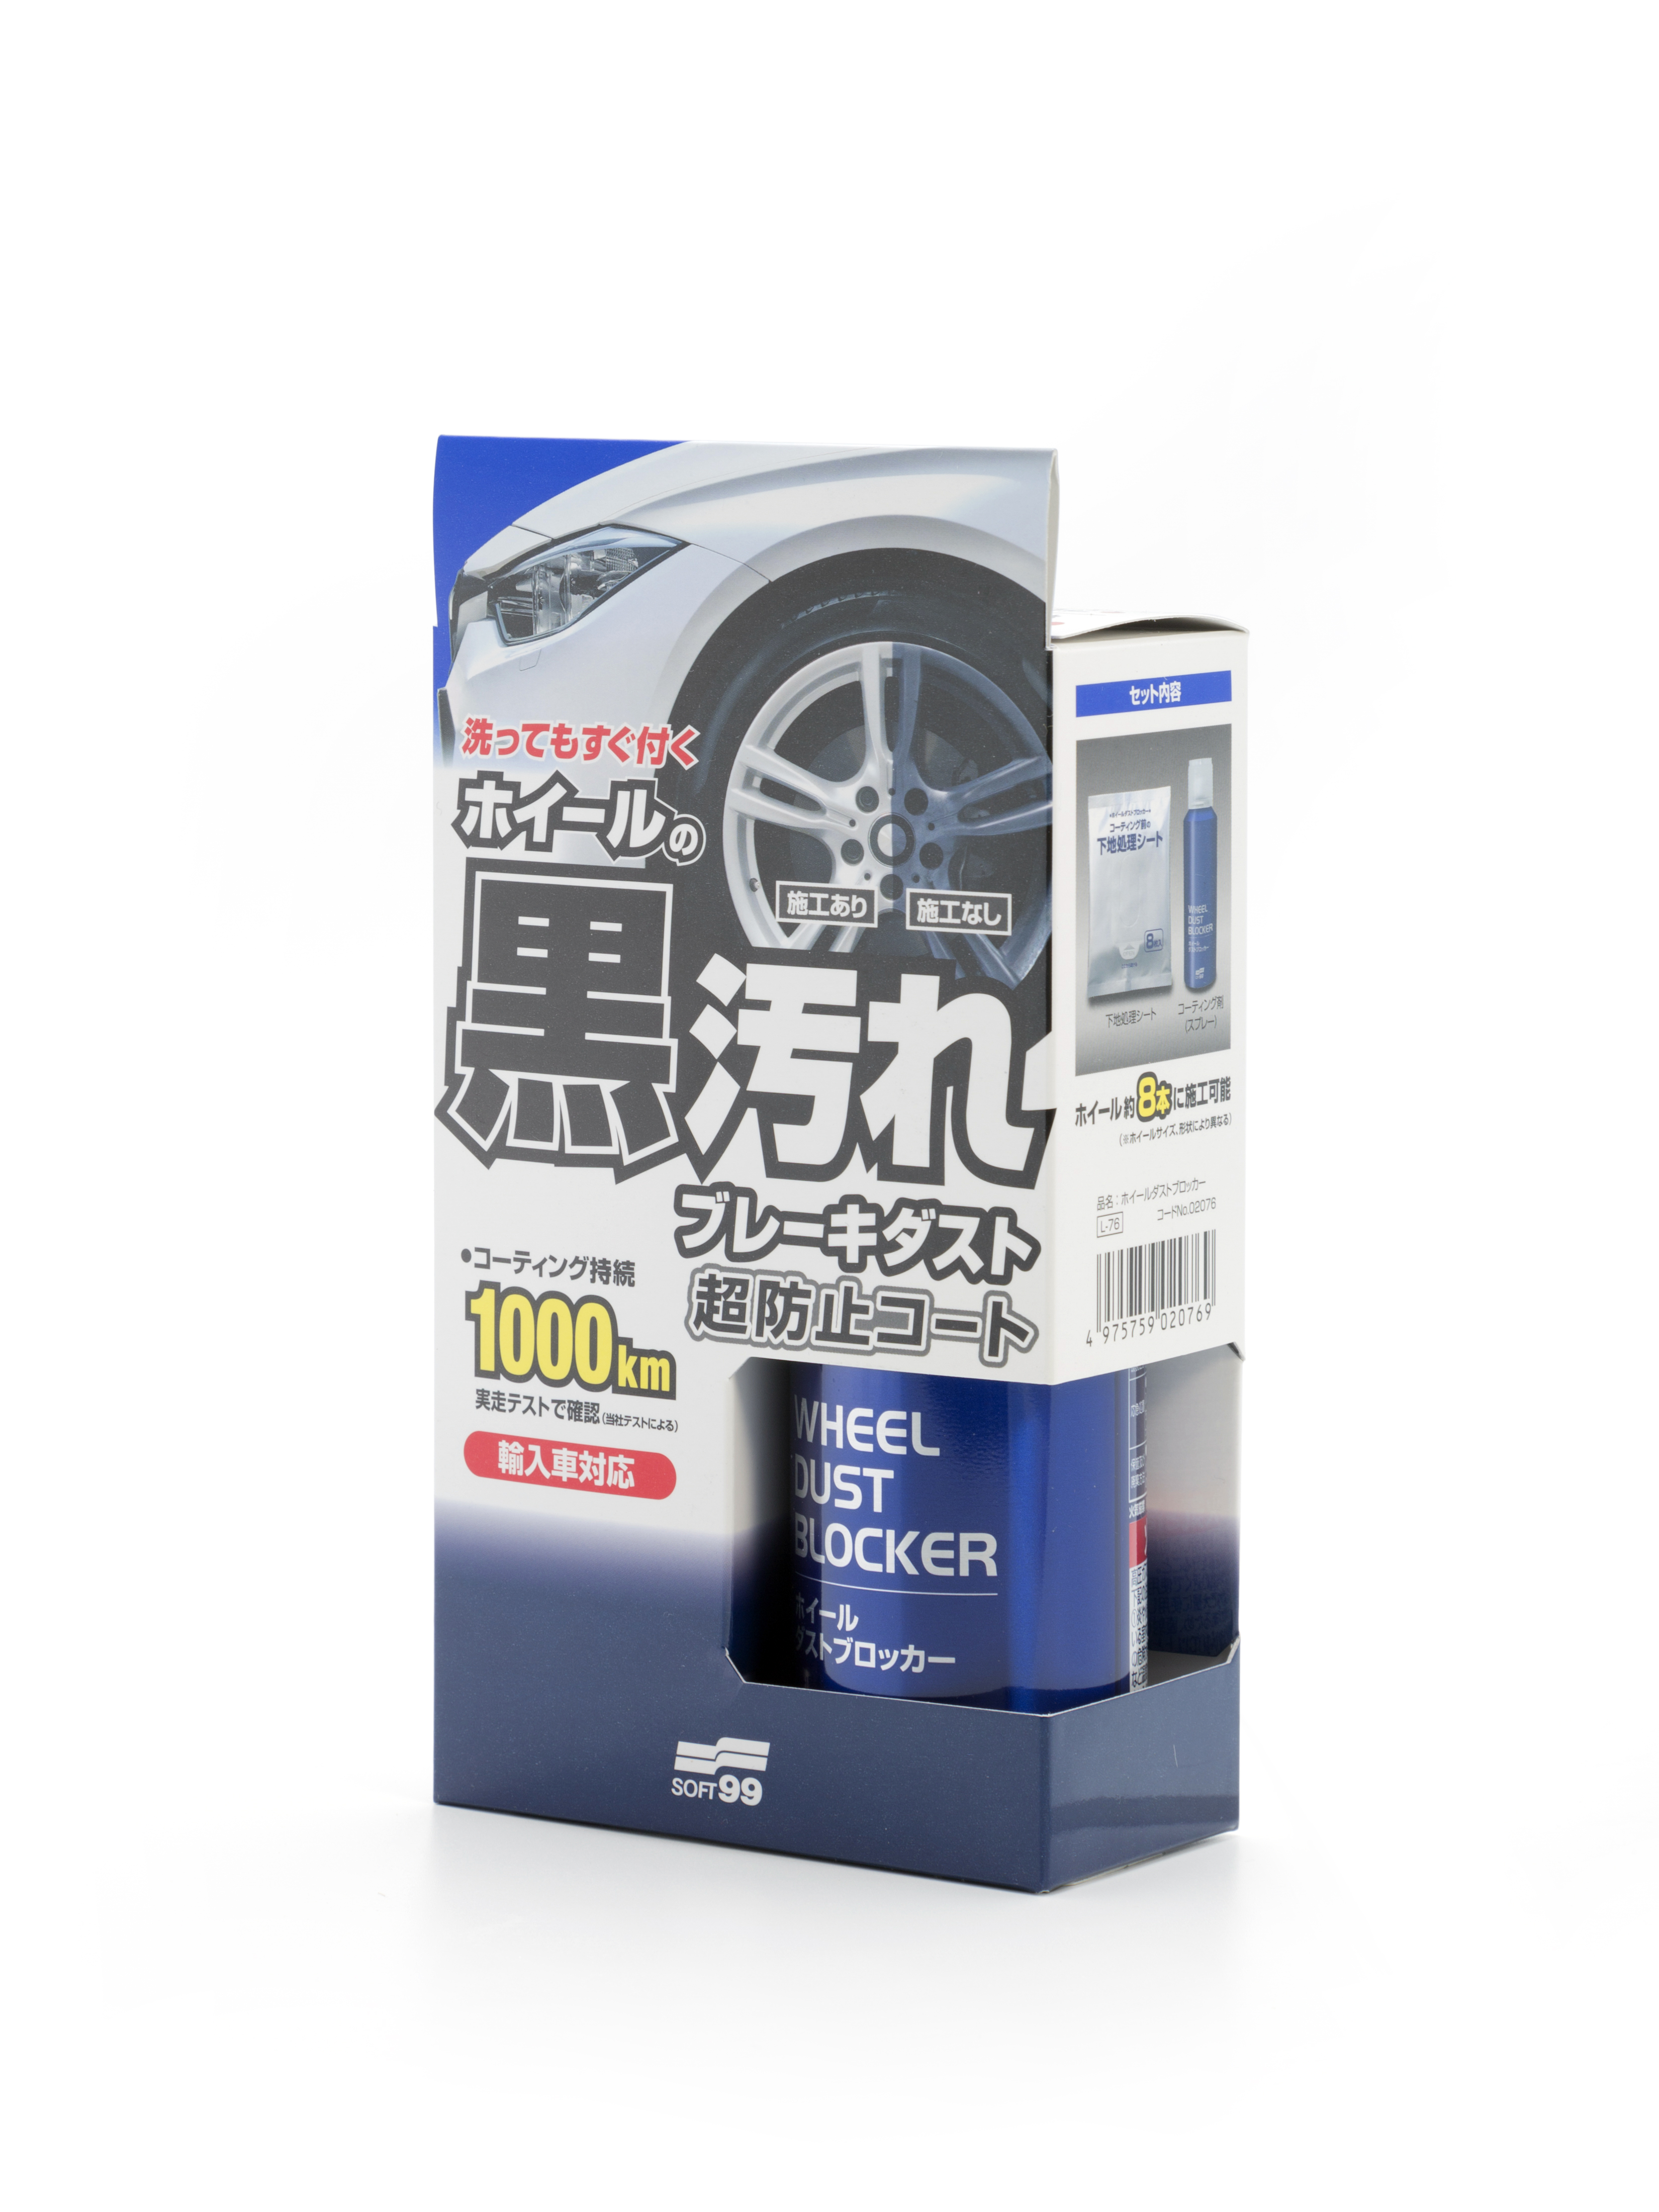 Покрытие для автомобильных дисков SOFT99 Wheel Dust Blocker 400мл 02076 от магазина А-маркет